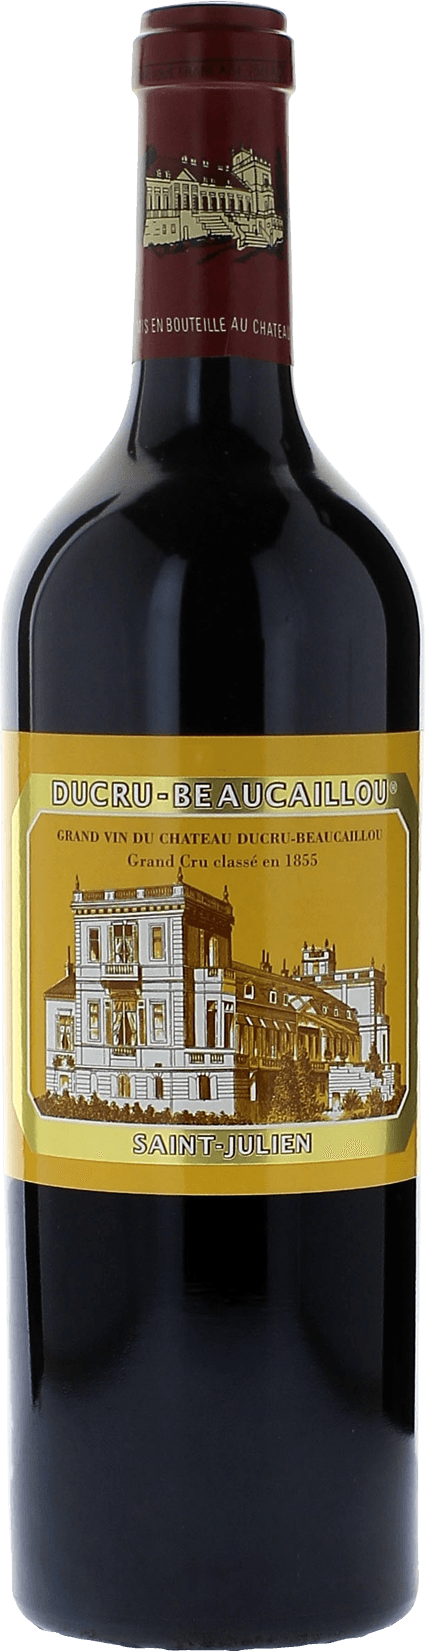 Ducru beaucaillou 2019 2me Grand cru class Saint-Julien, Bordeaux rouge